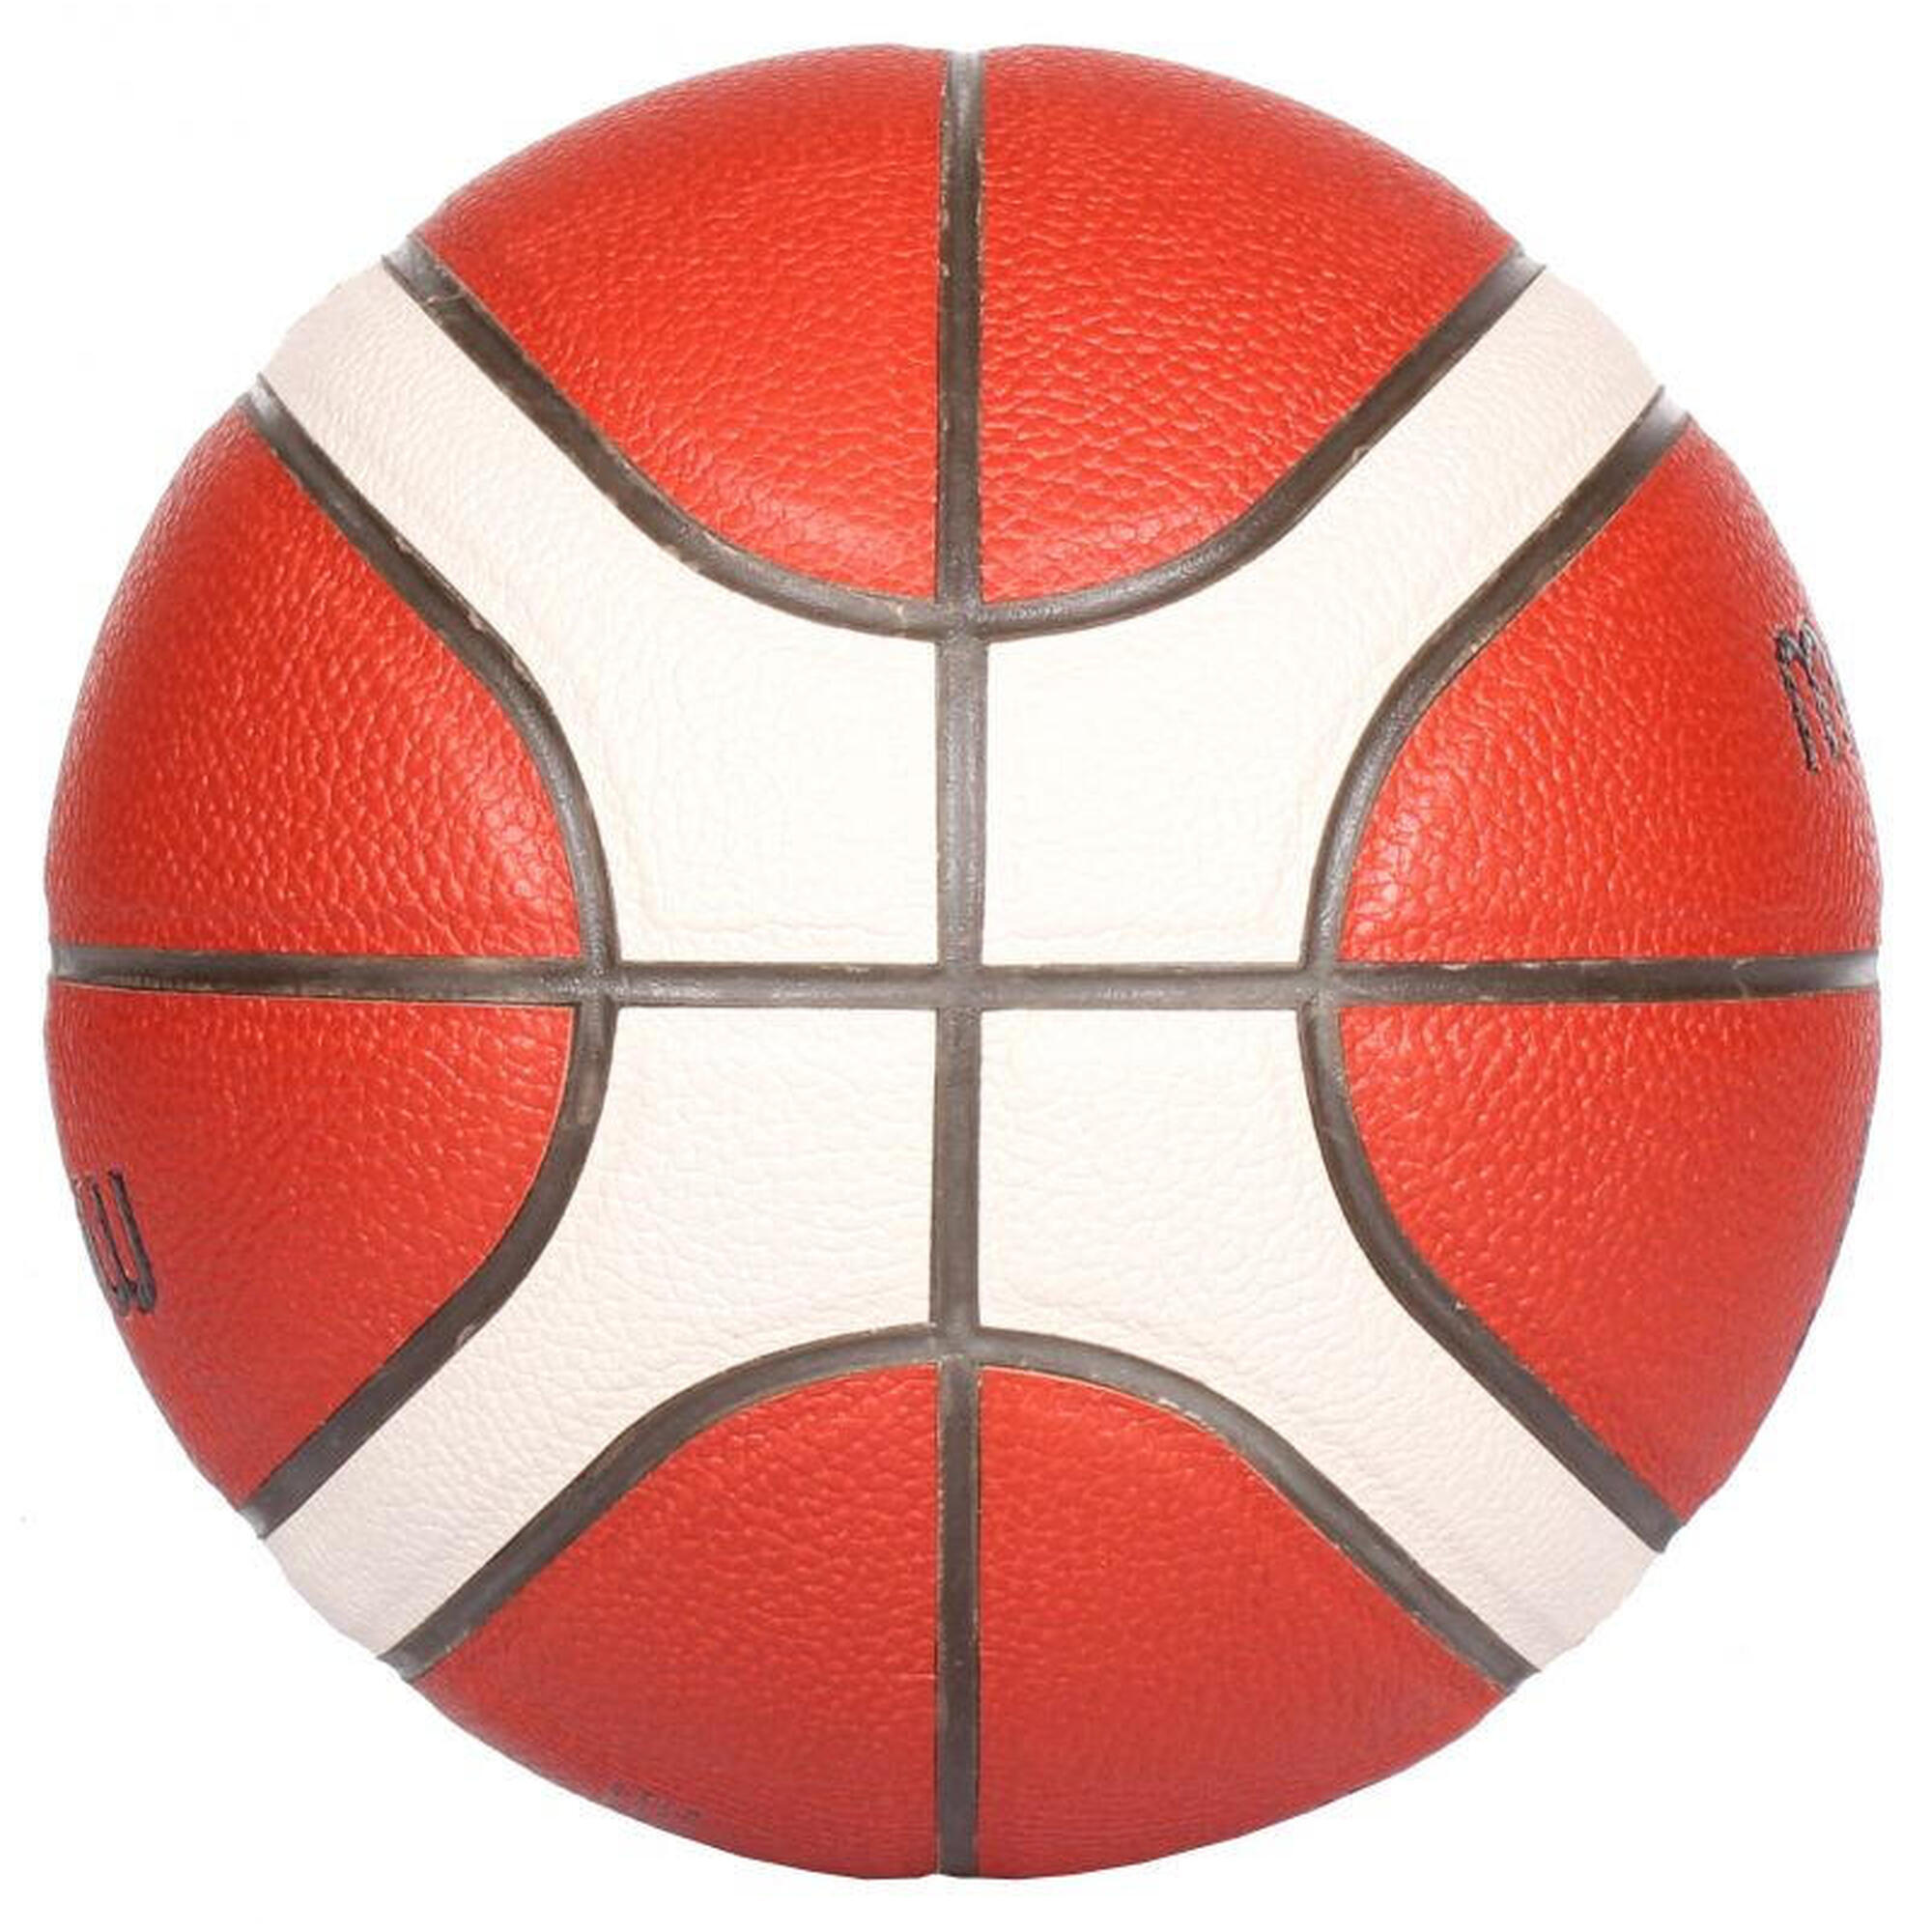 Ballon de Basketball Molten BG4000 T6